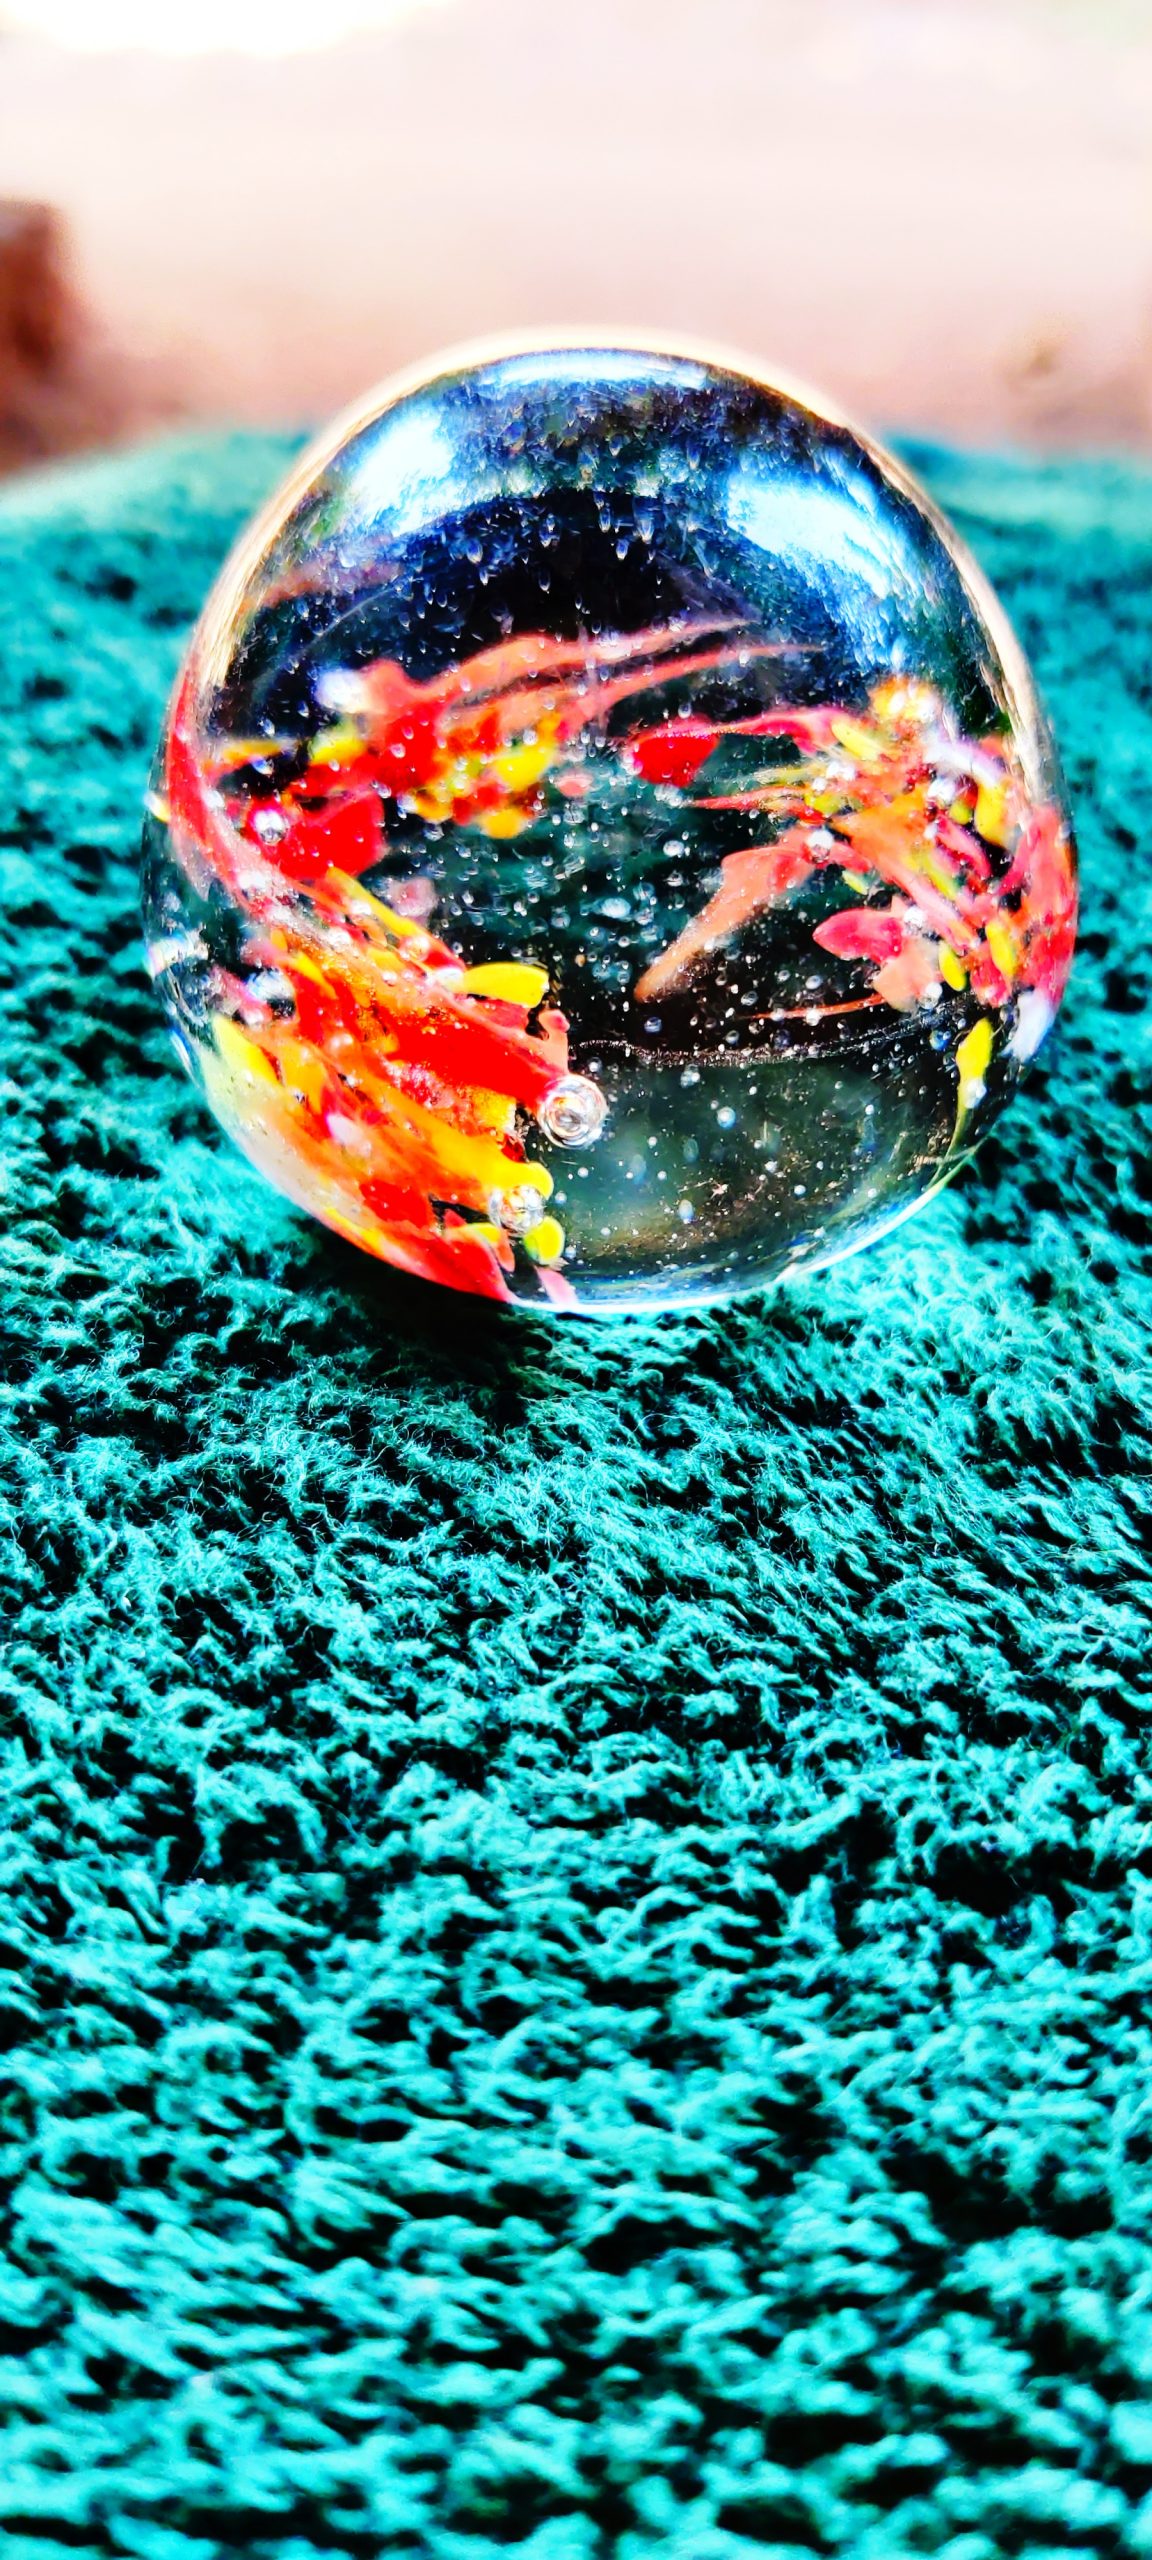 A glass ball